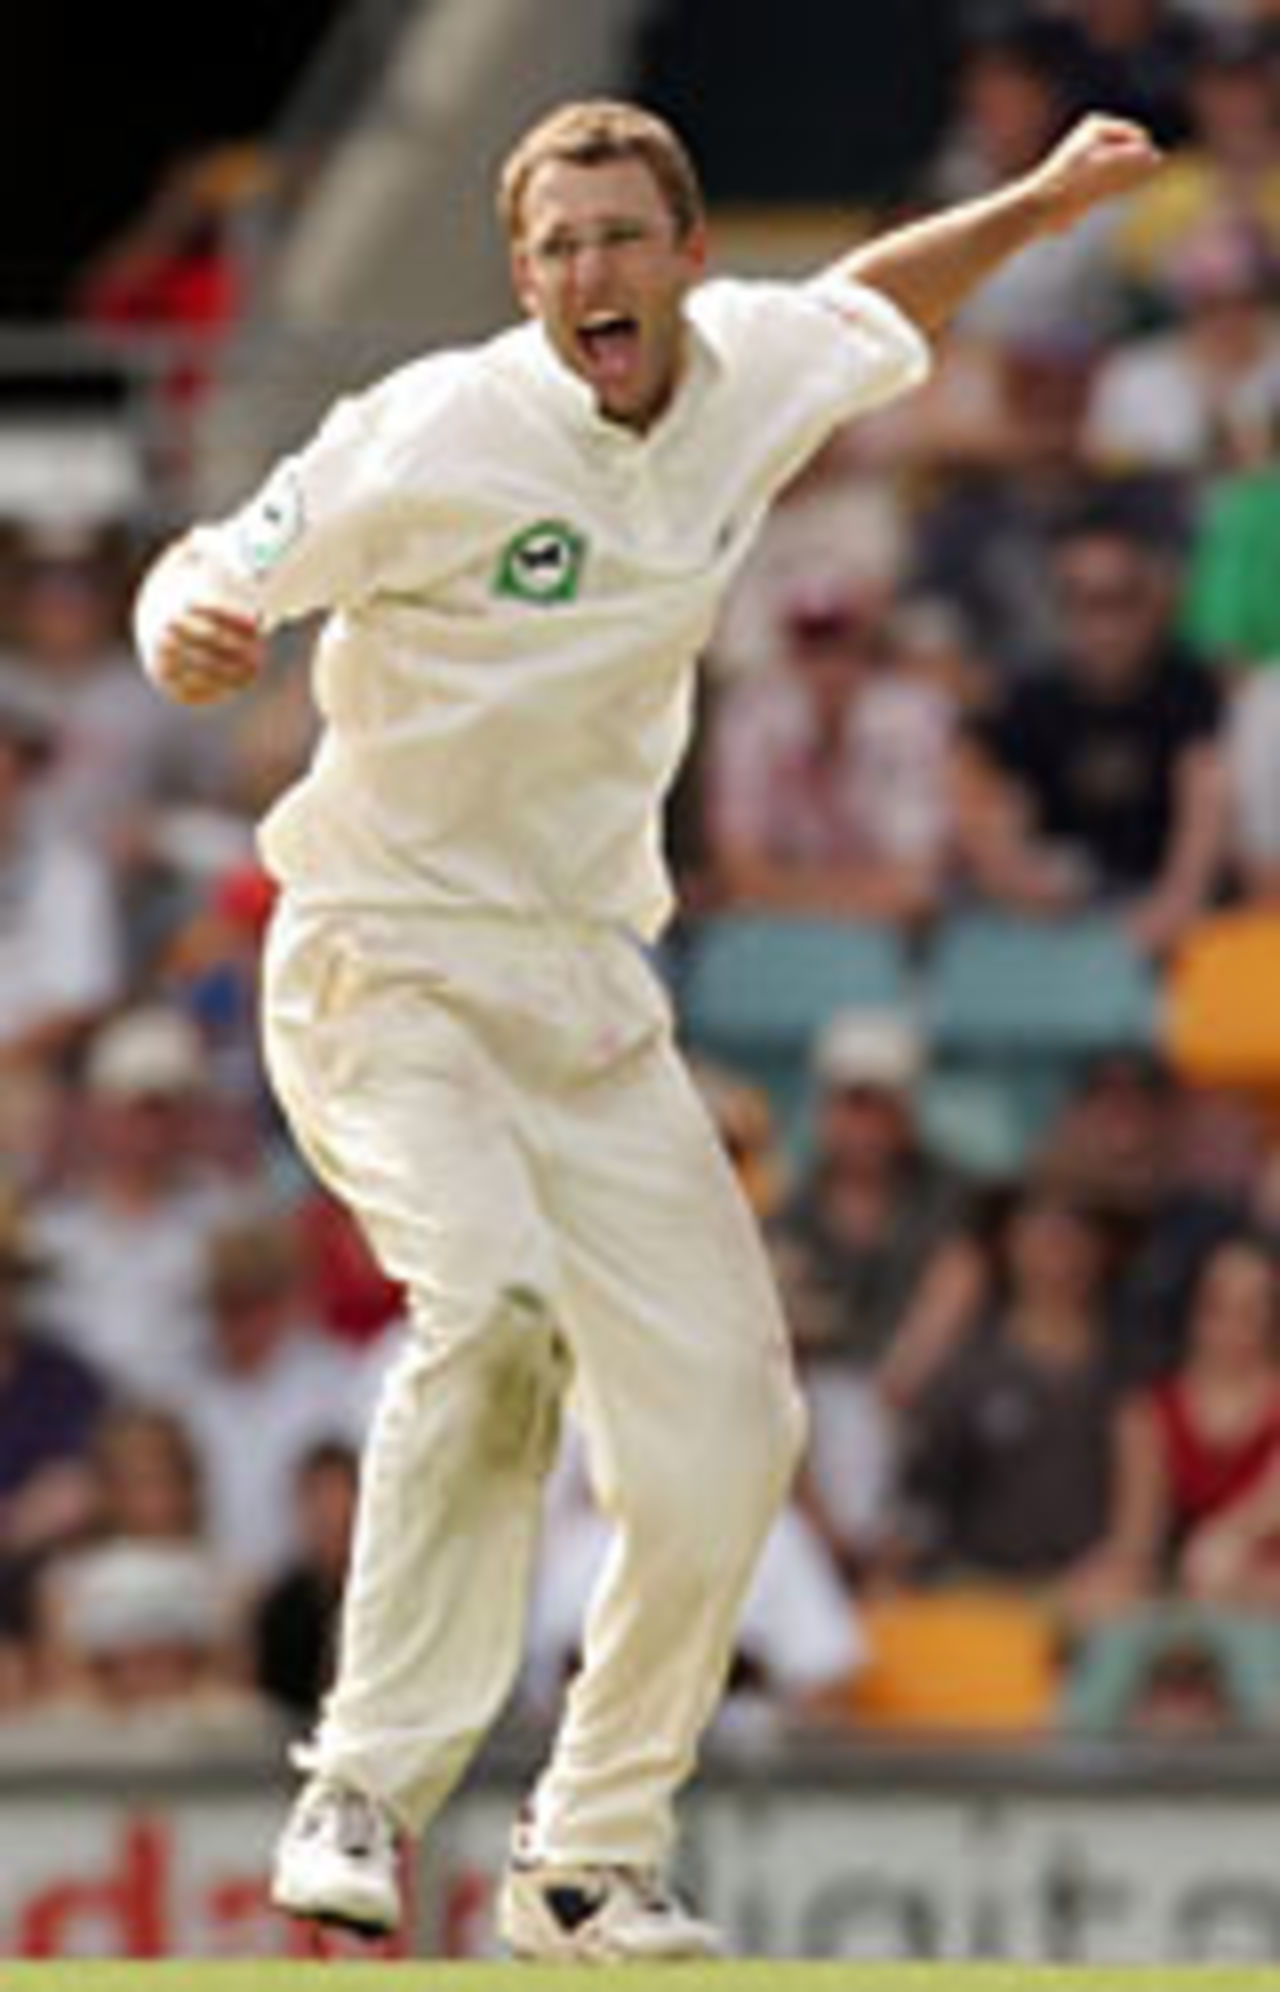 A wicket at last for Daniel Vettori, Australia v New Zealand, 1st Test, Brisbane, November 20, 2004